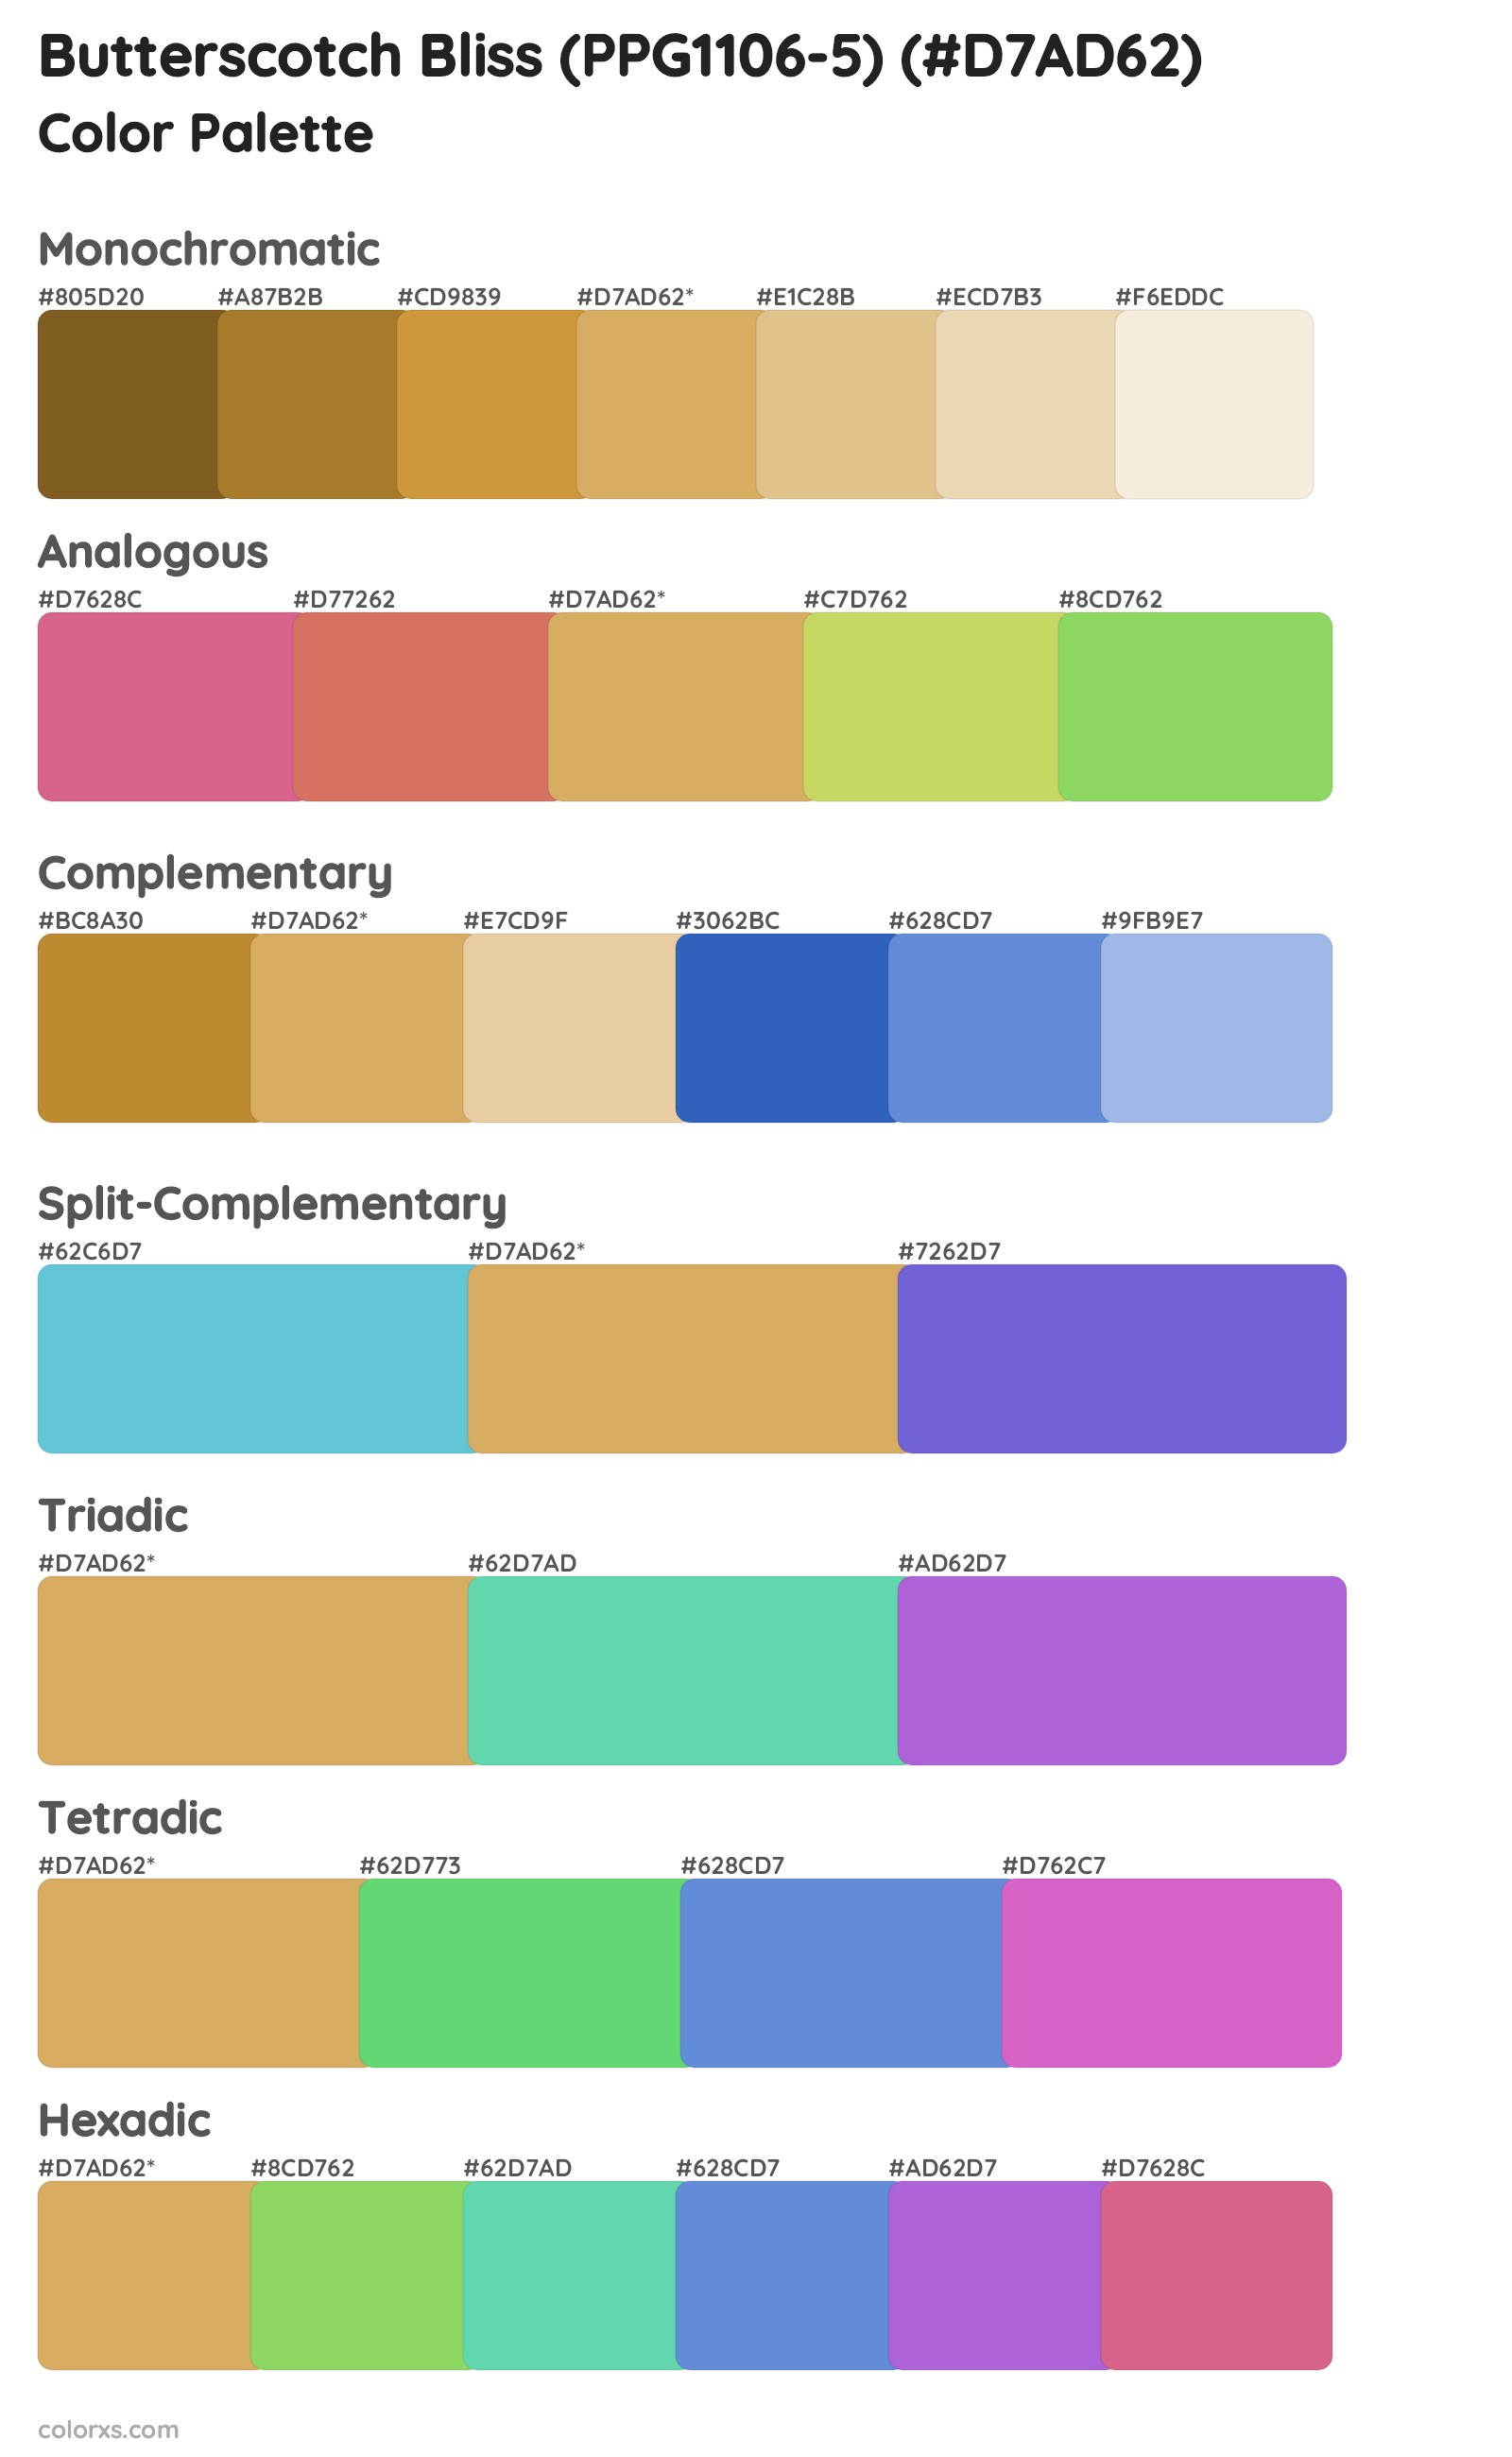 Butterscotch Bliss (PPG1106-5) Color Scheme Palettes